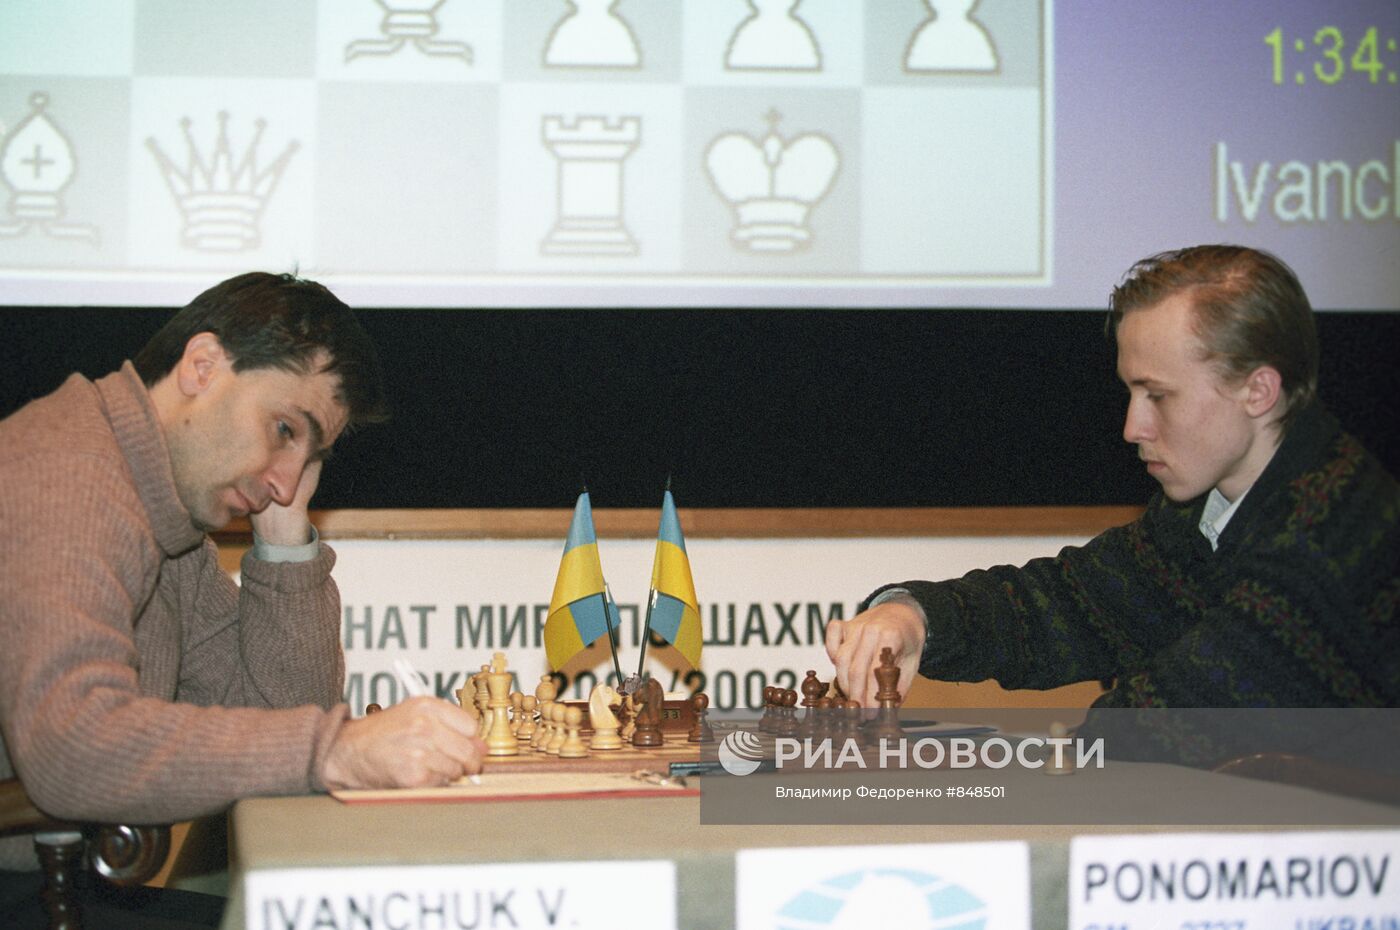 Шахматисты В. Иванчук и Р. Пономарев на Чемпионате мира